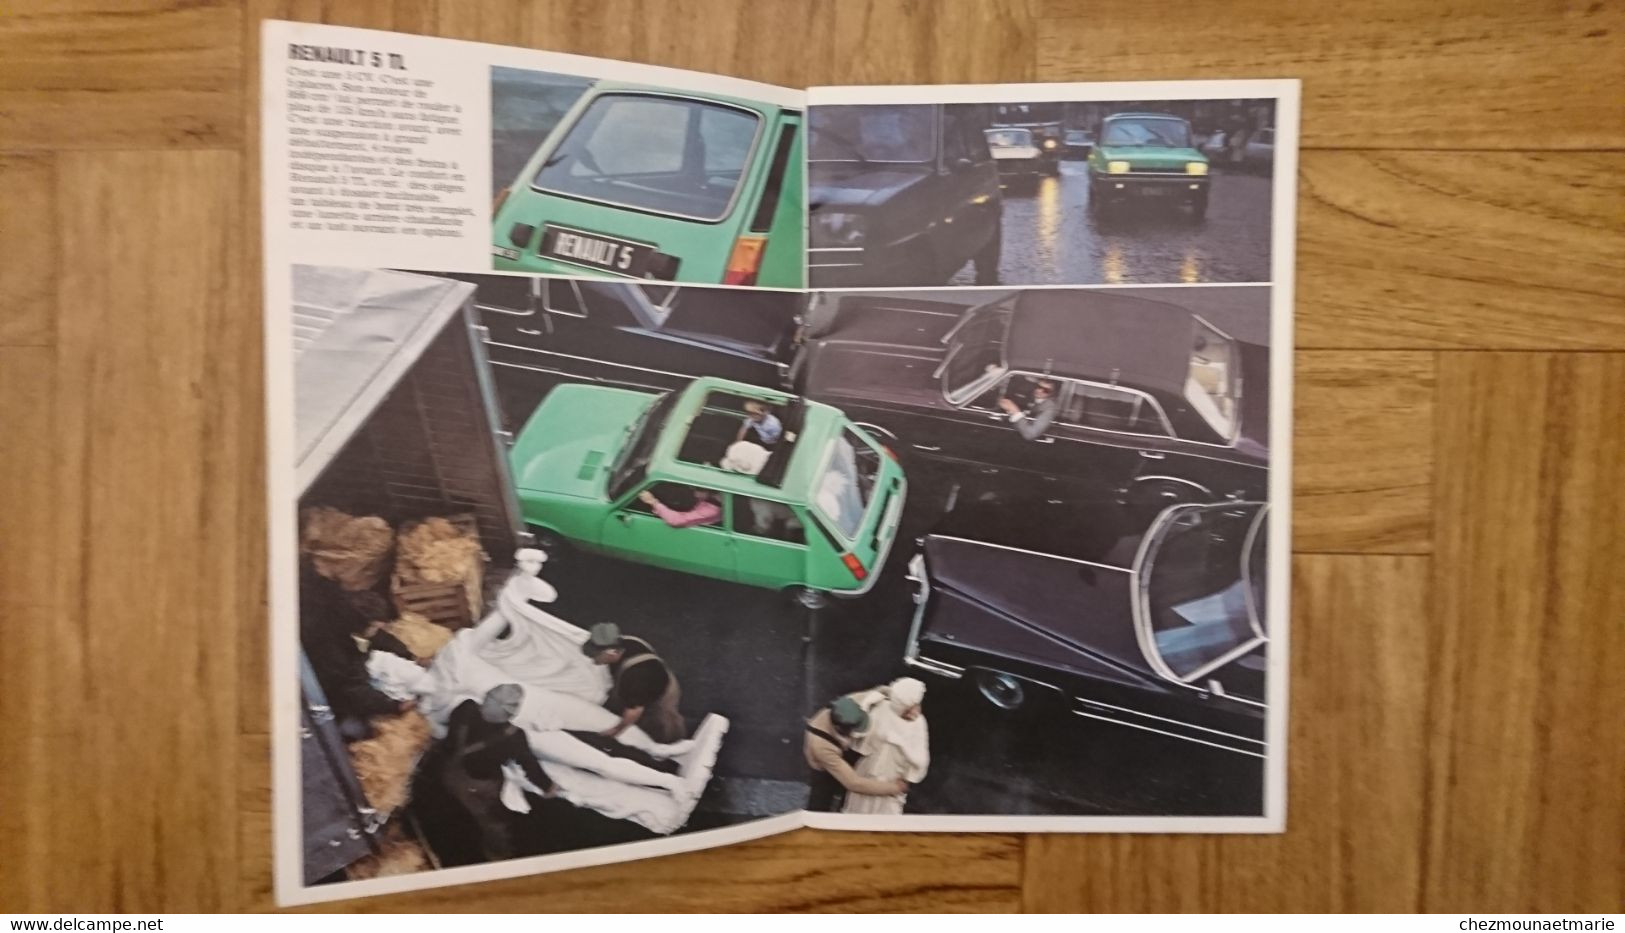 VOITURE RENAULT 5 ANNEE MODELES 1979 - LIVRET DE 31 PAGES FOURNI PAR REGIE A BOULOGNE - Automobili